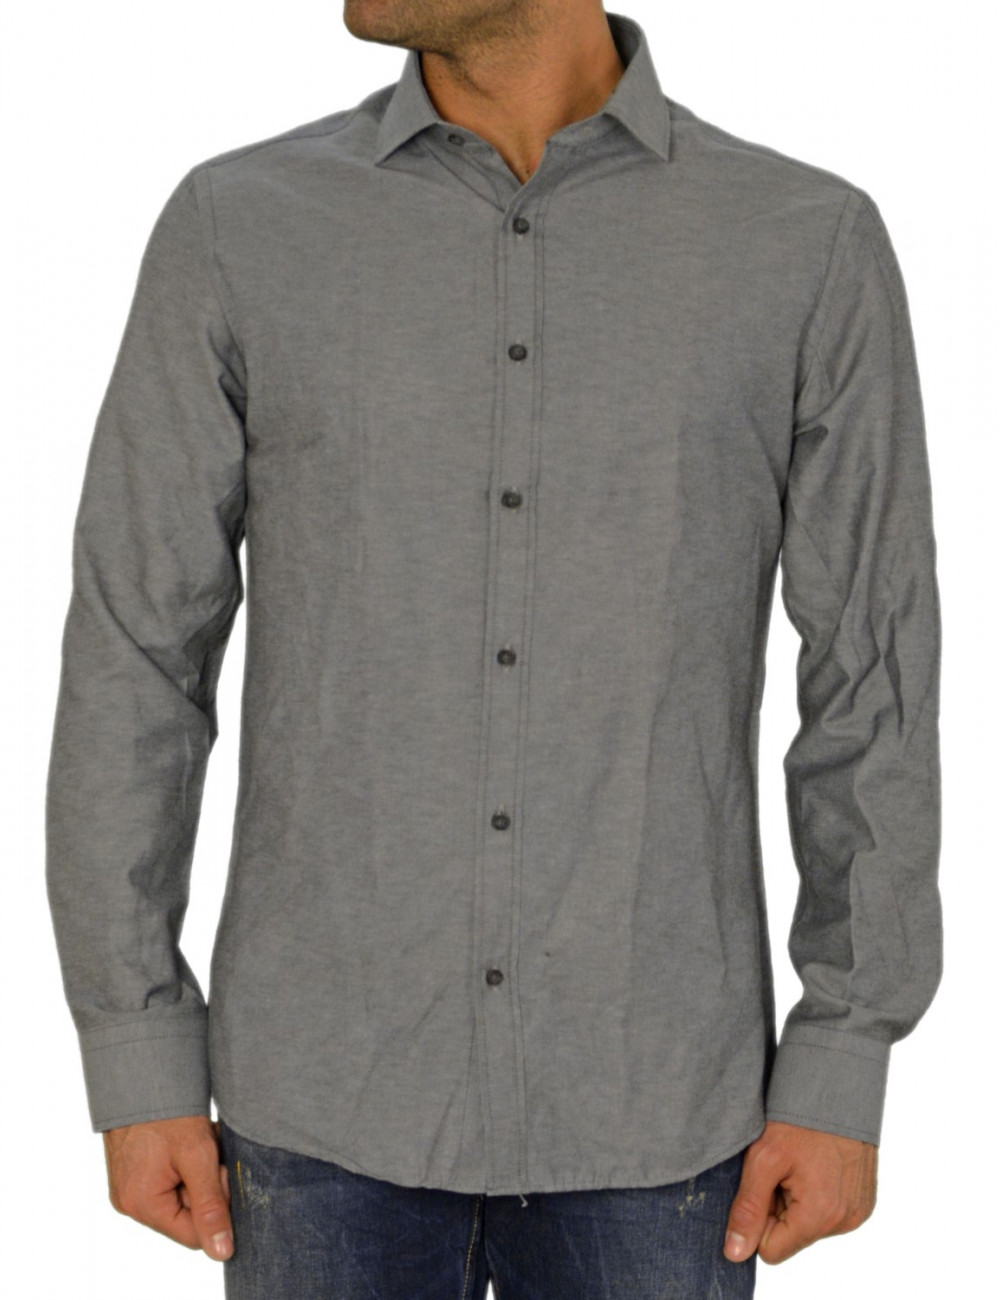 Ανδρικό πουκάμισο GioS ανθρακί 9545W17F